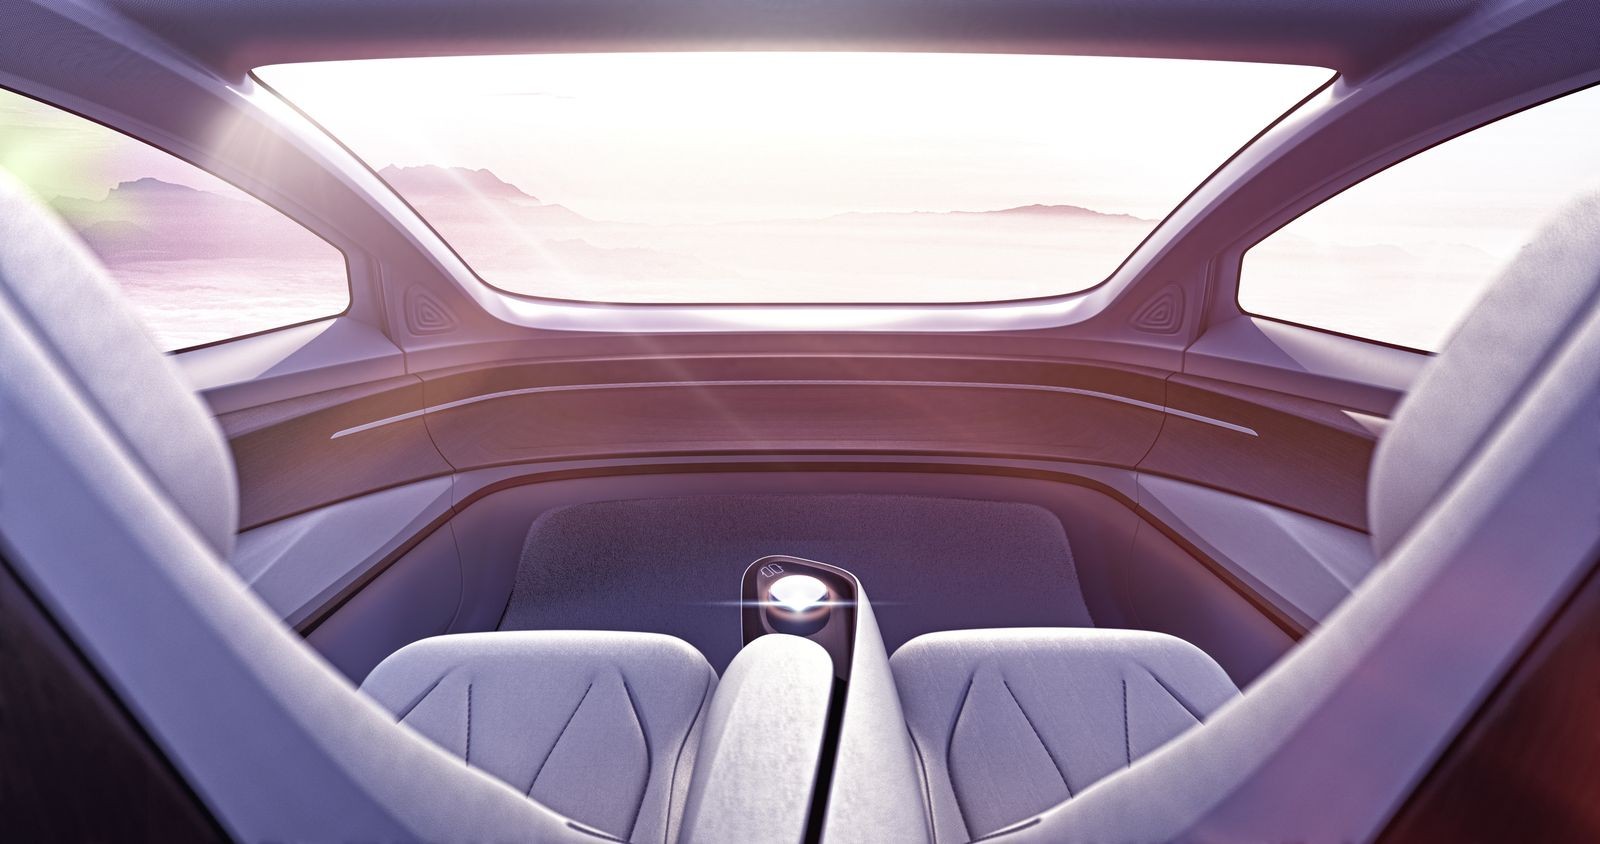 Интерьер автомобиля будущего глазами дизайнеров VW: руля нет, педалей нет, дороги за окном тоже нет… Летим?